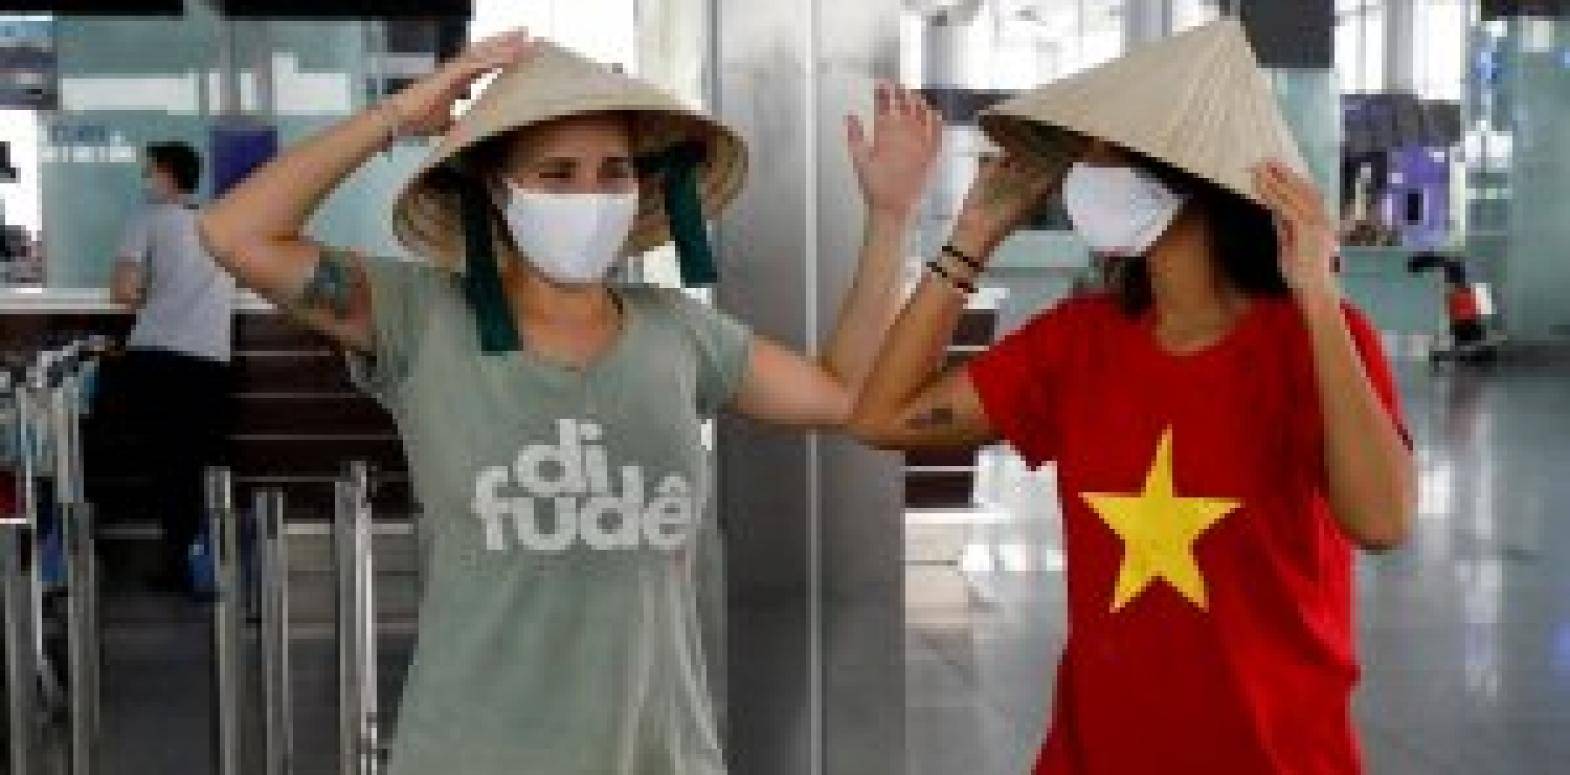 Обновленный осторожный прогноз, когда вьетнам откроет границу для туристов, в том числе из россии, на основе анализа обстановки, новостей, статистики по коронавирусу (июнь 2020) — вьетнамские зарисовки в нячанге